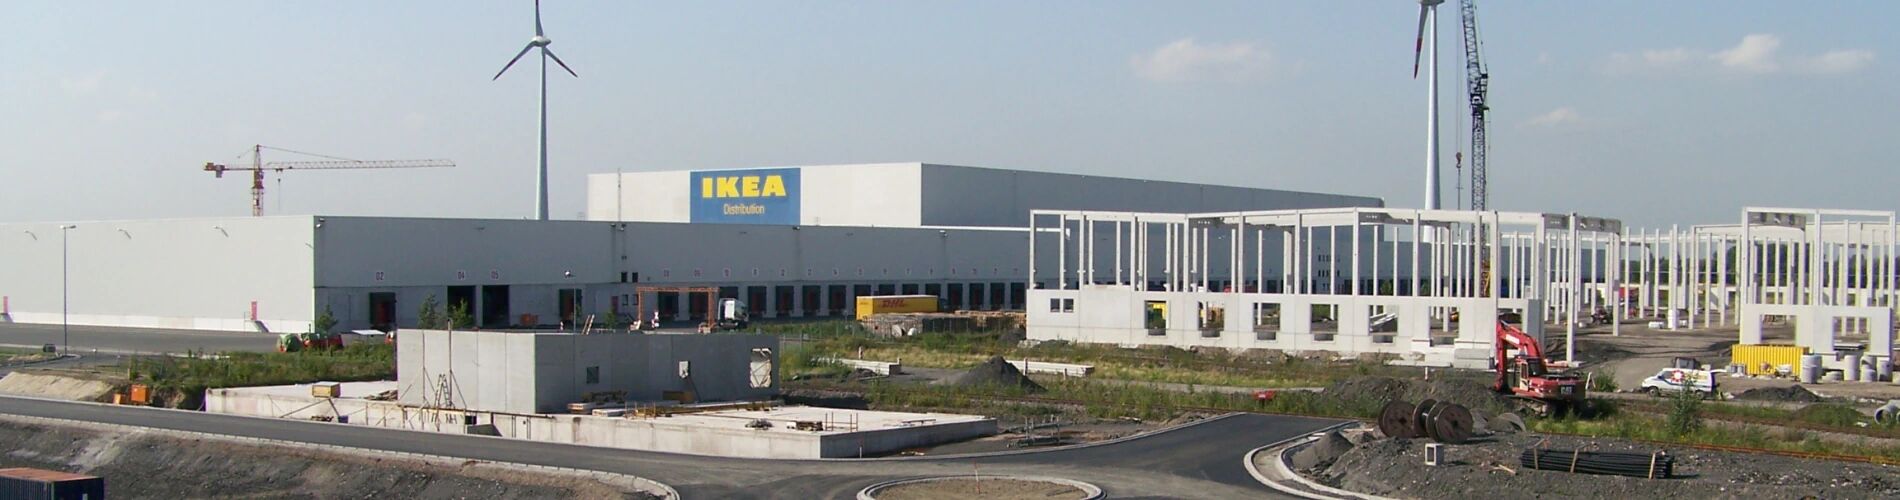 Frontalsicht auf IKEA Distributionszentrum Dortmund